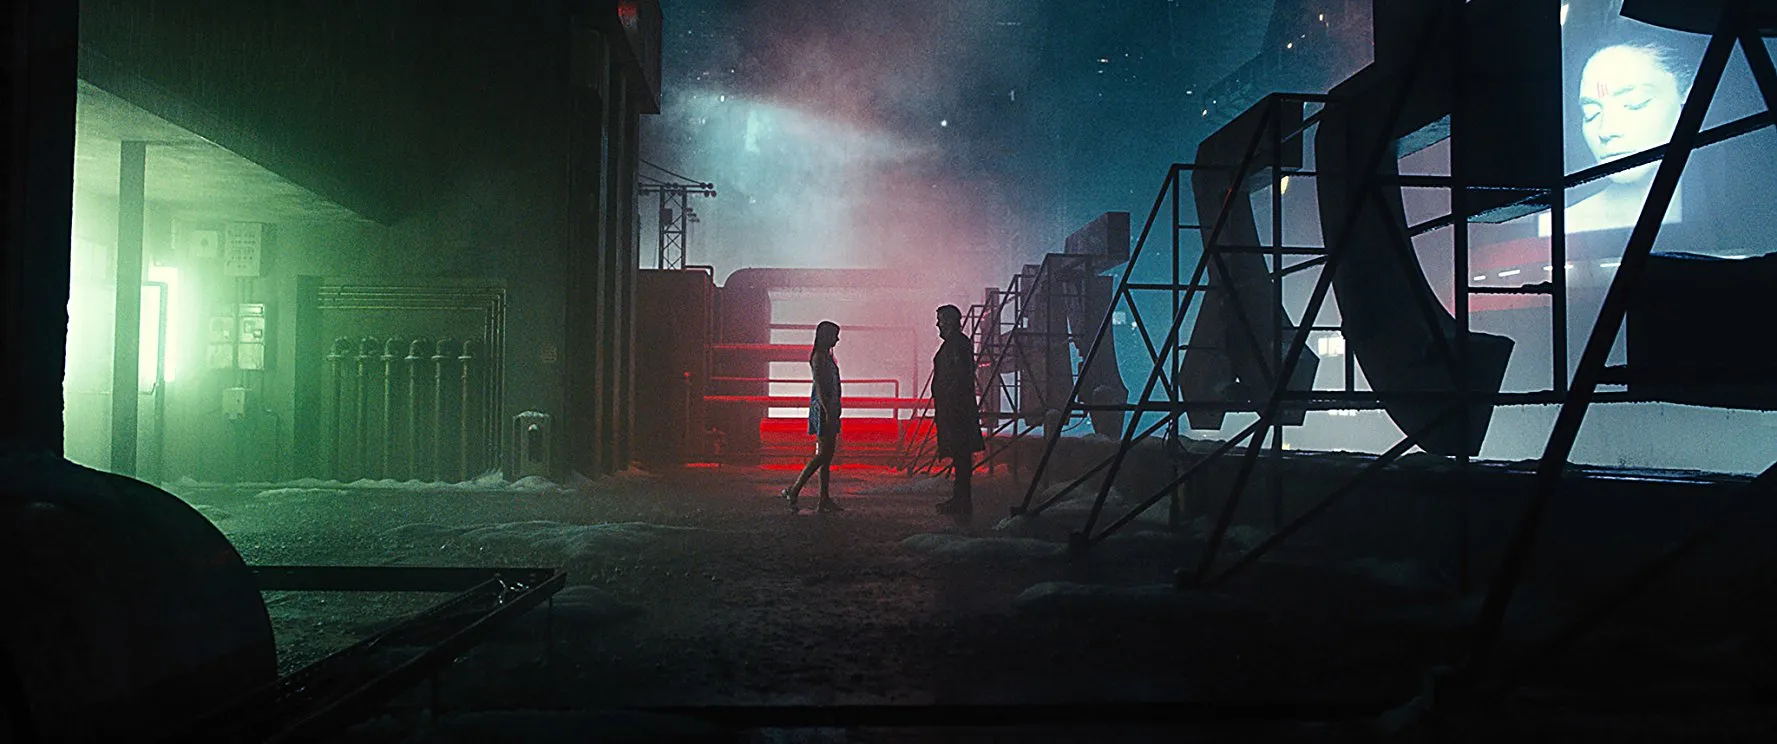 Review phim Blade Runner 2049 (Tội Phạm Nhân Bản 2049)